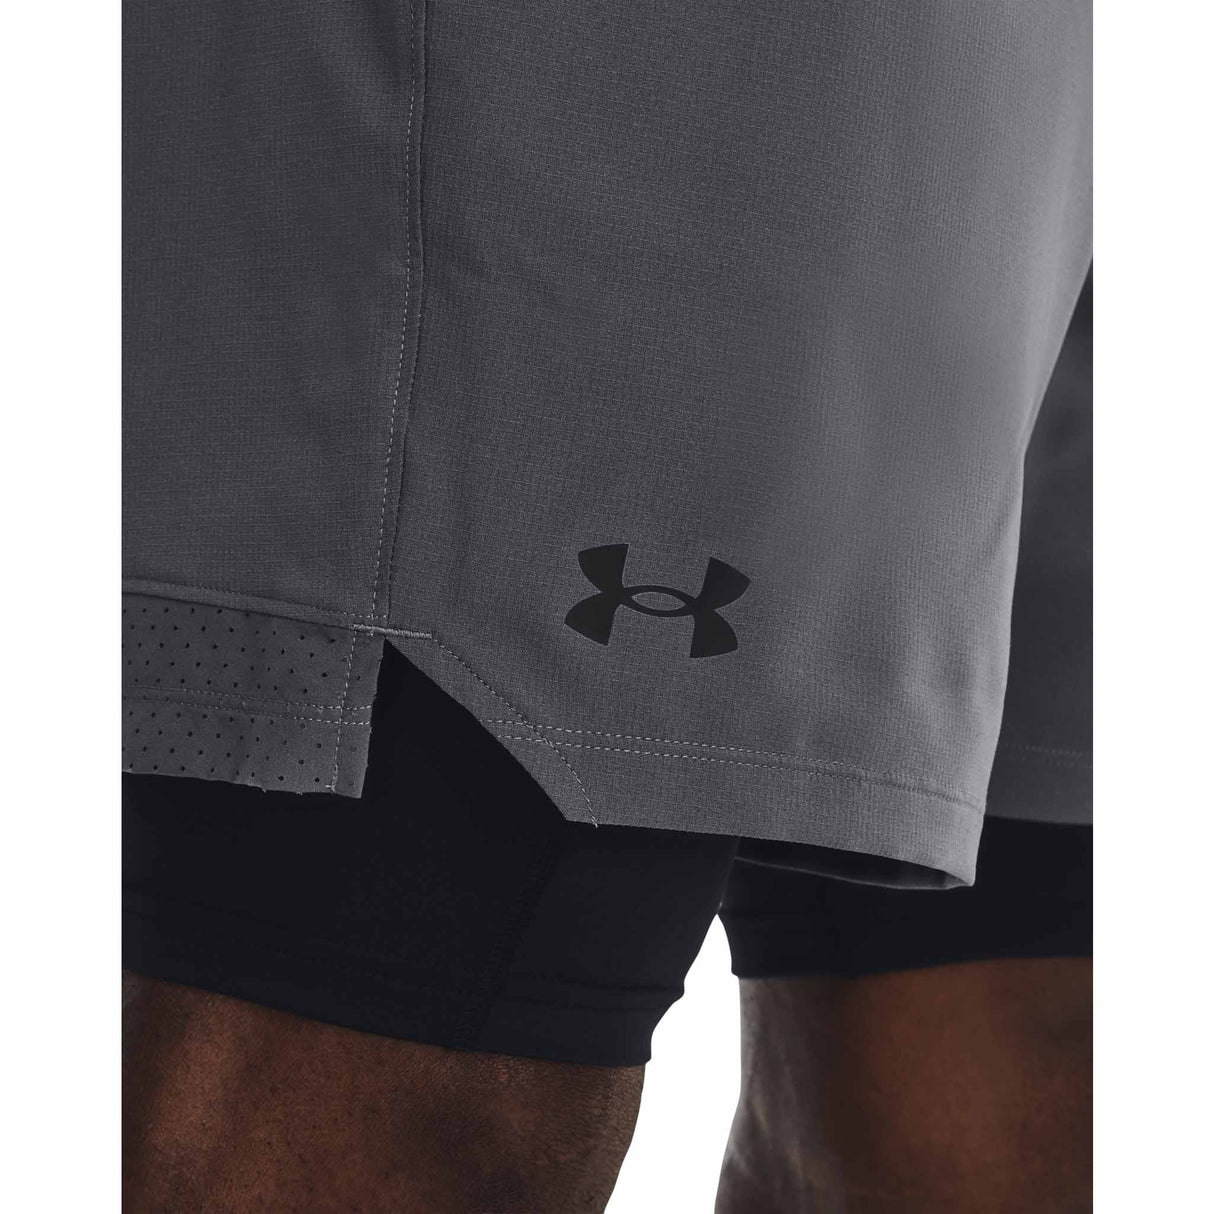 Under Armour Vanish Woven shorts 2-en-1 pour homme - Pitch Grey / Black